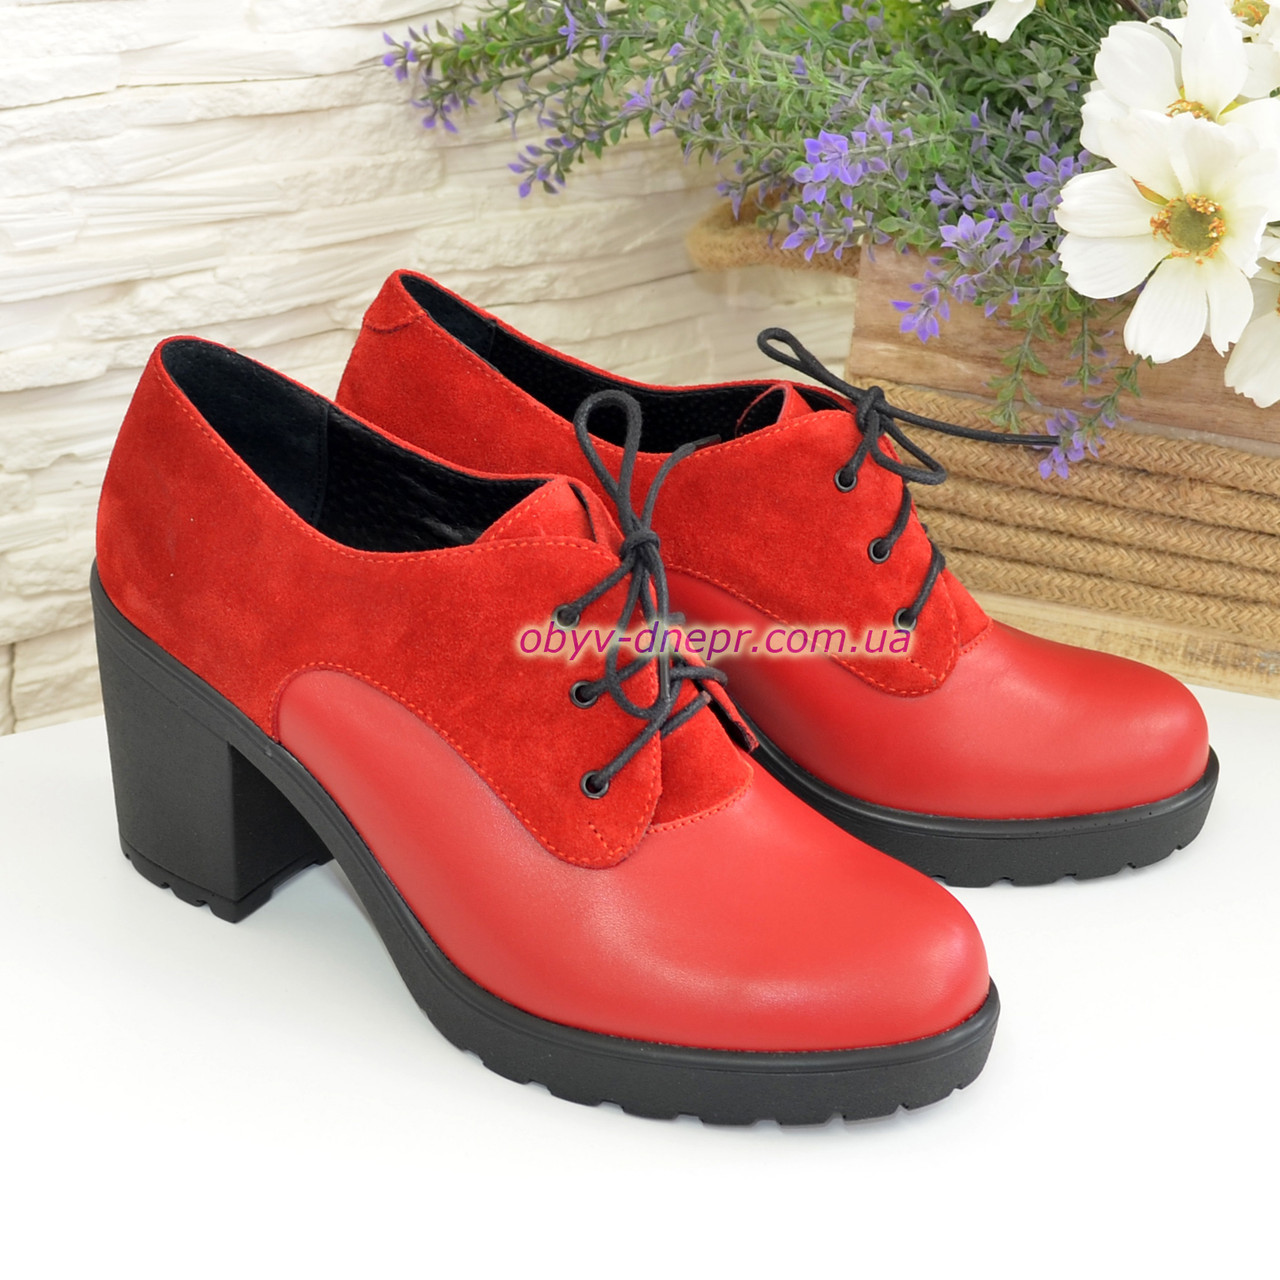 

Женские красные туфли на устойчивом каблуке, Красный